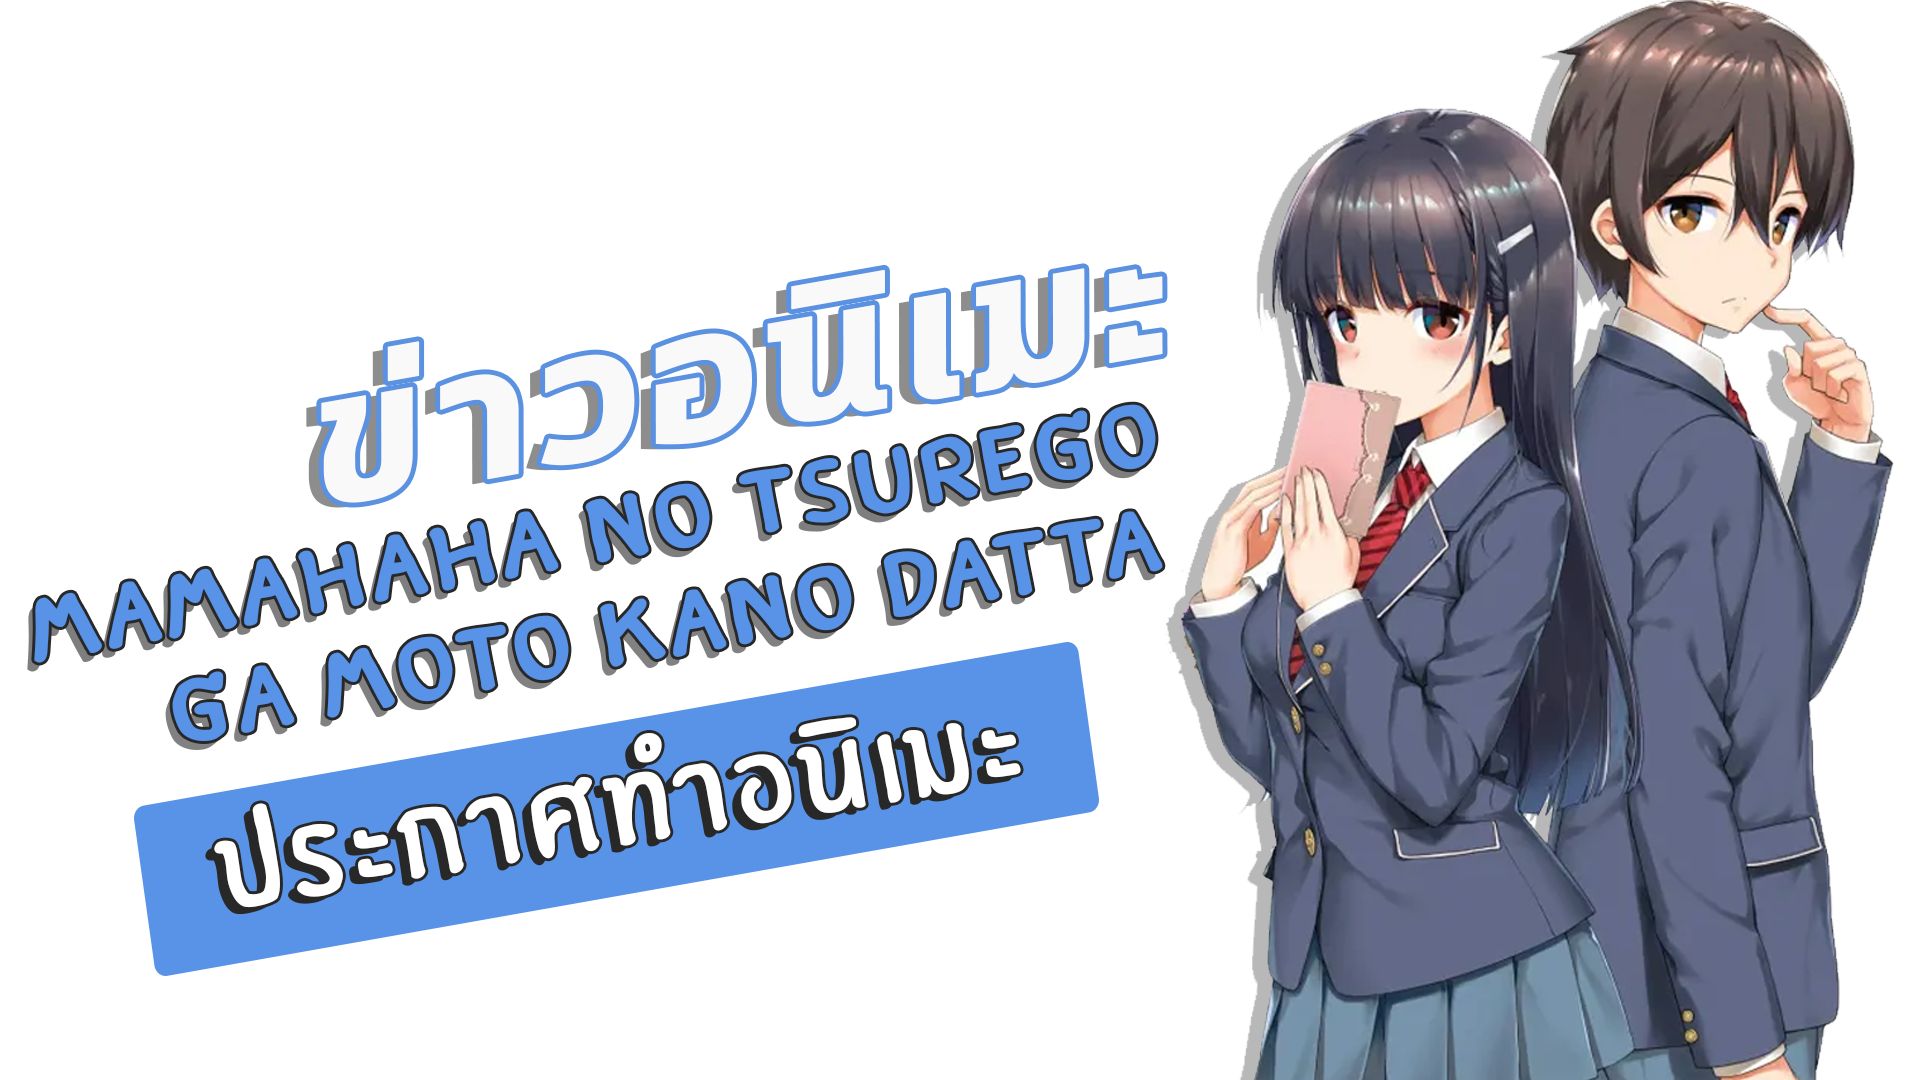 Mamahaha no Tsurego ga Moto Kano Datta: harmoe interpreta o tema de  encerramento do Anime TV » Anime Xis